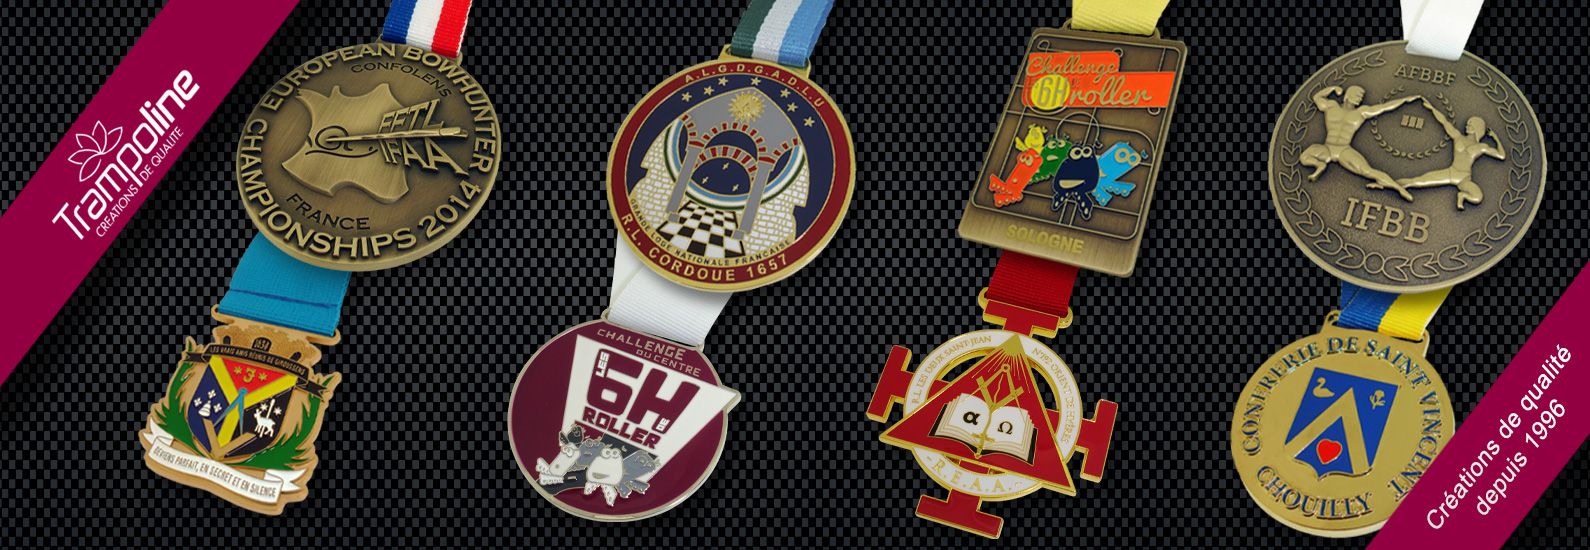 1 medaille avec ruban tour de cou fabricant medaille sportive recompense course medaille marathon finisher medaille de cou